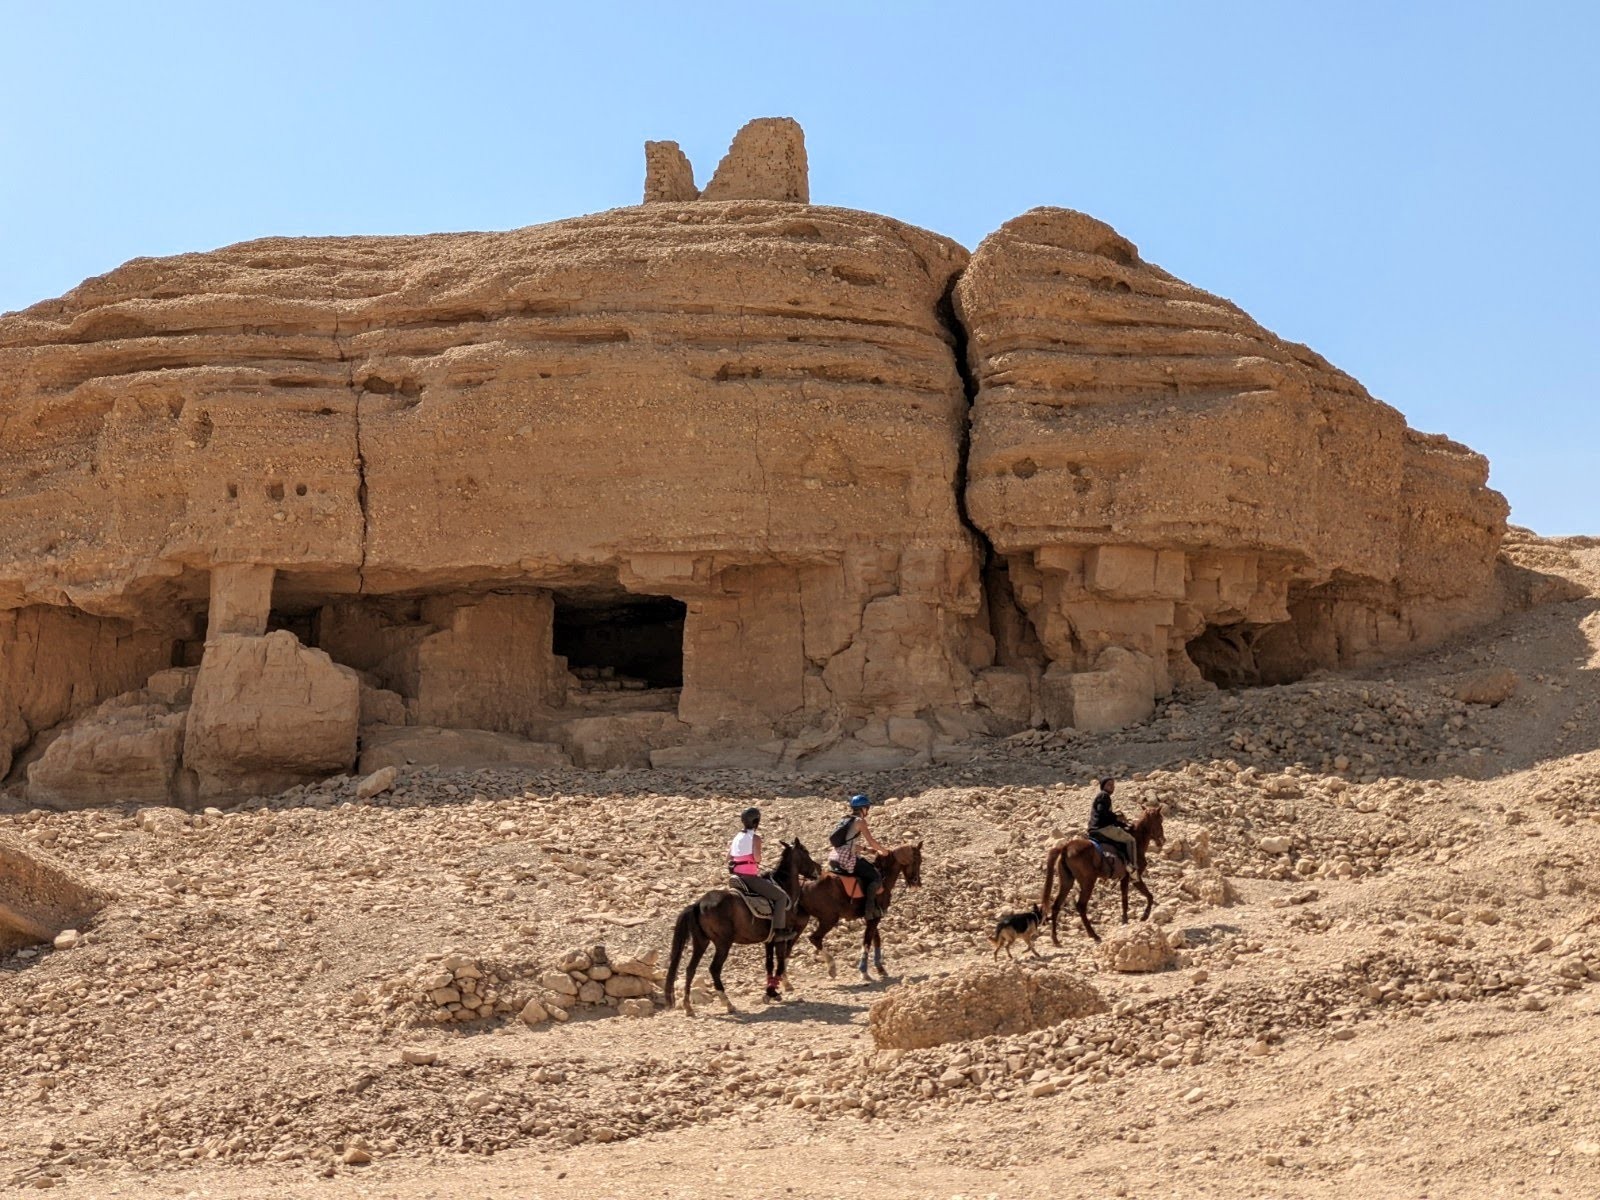 horse-riding-luxor-desert-caves-egypt-8721.jpg